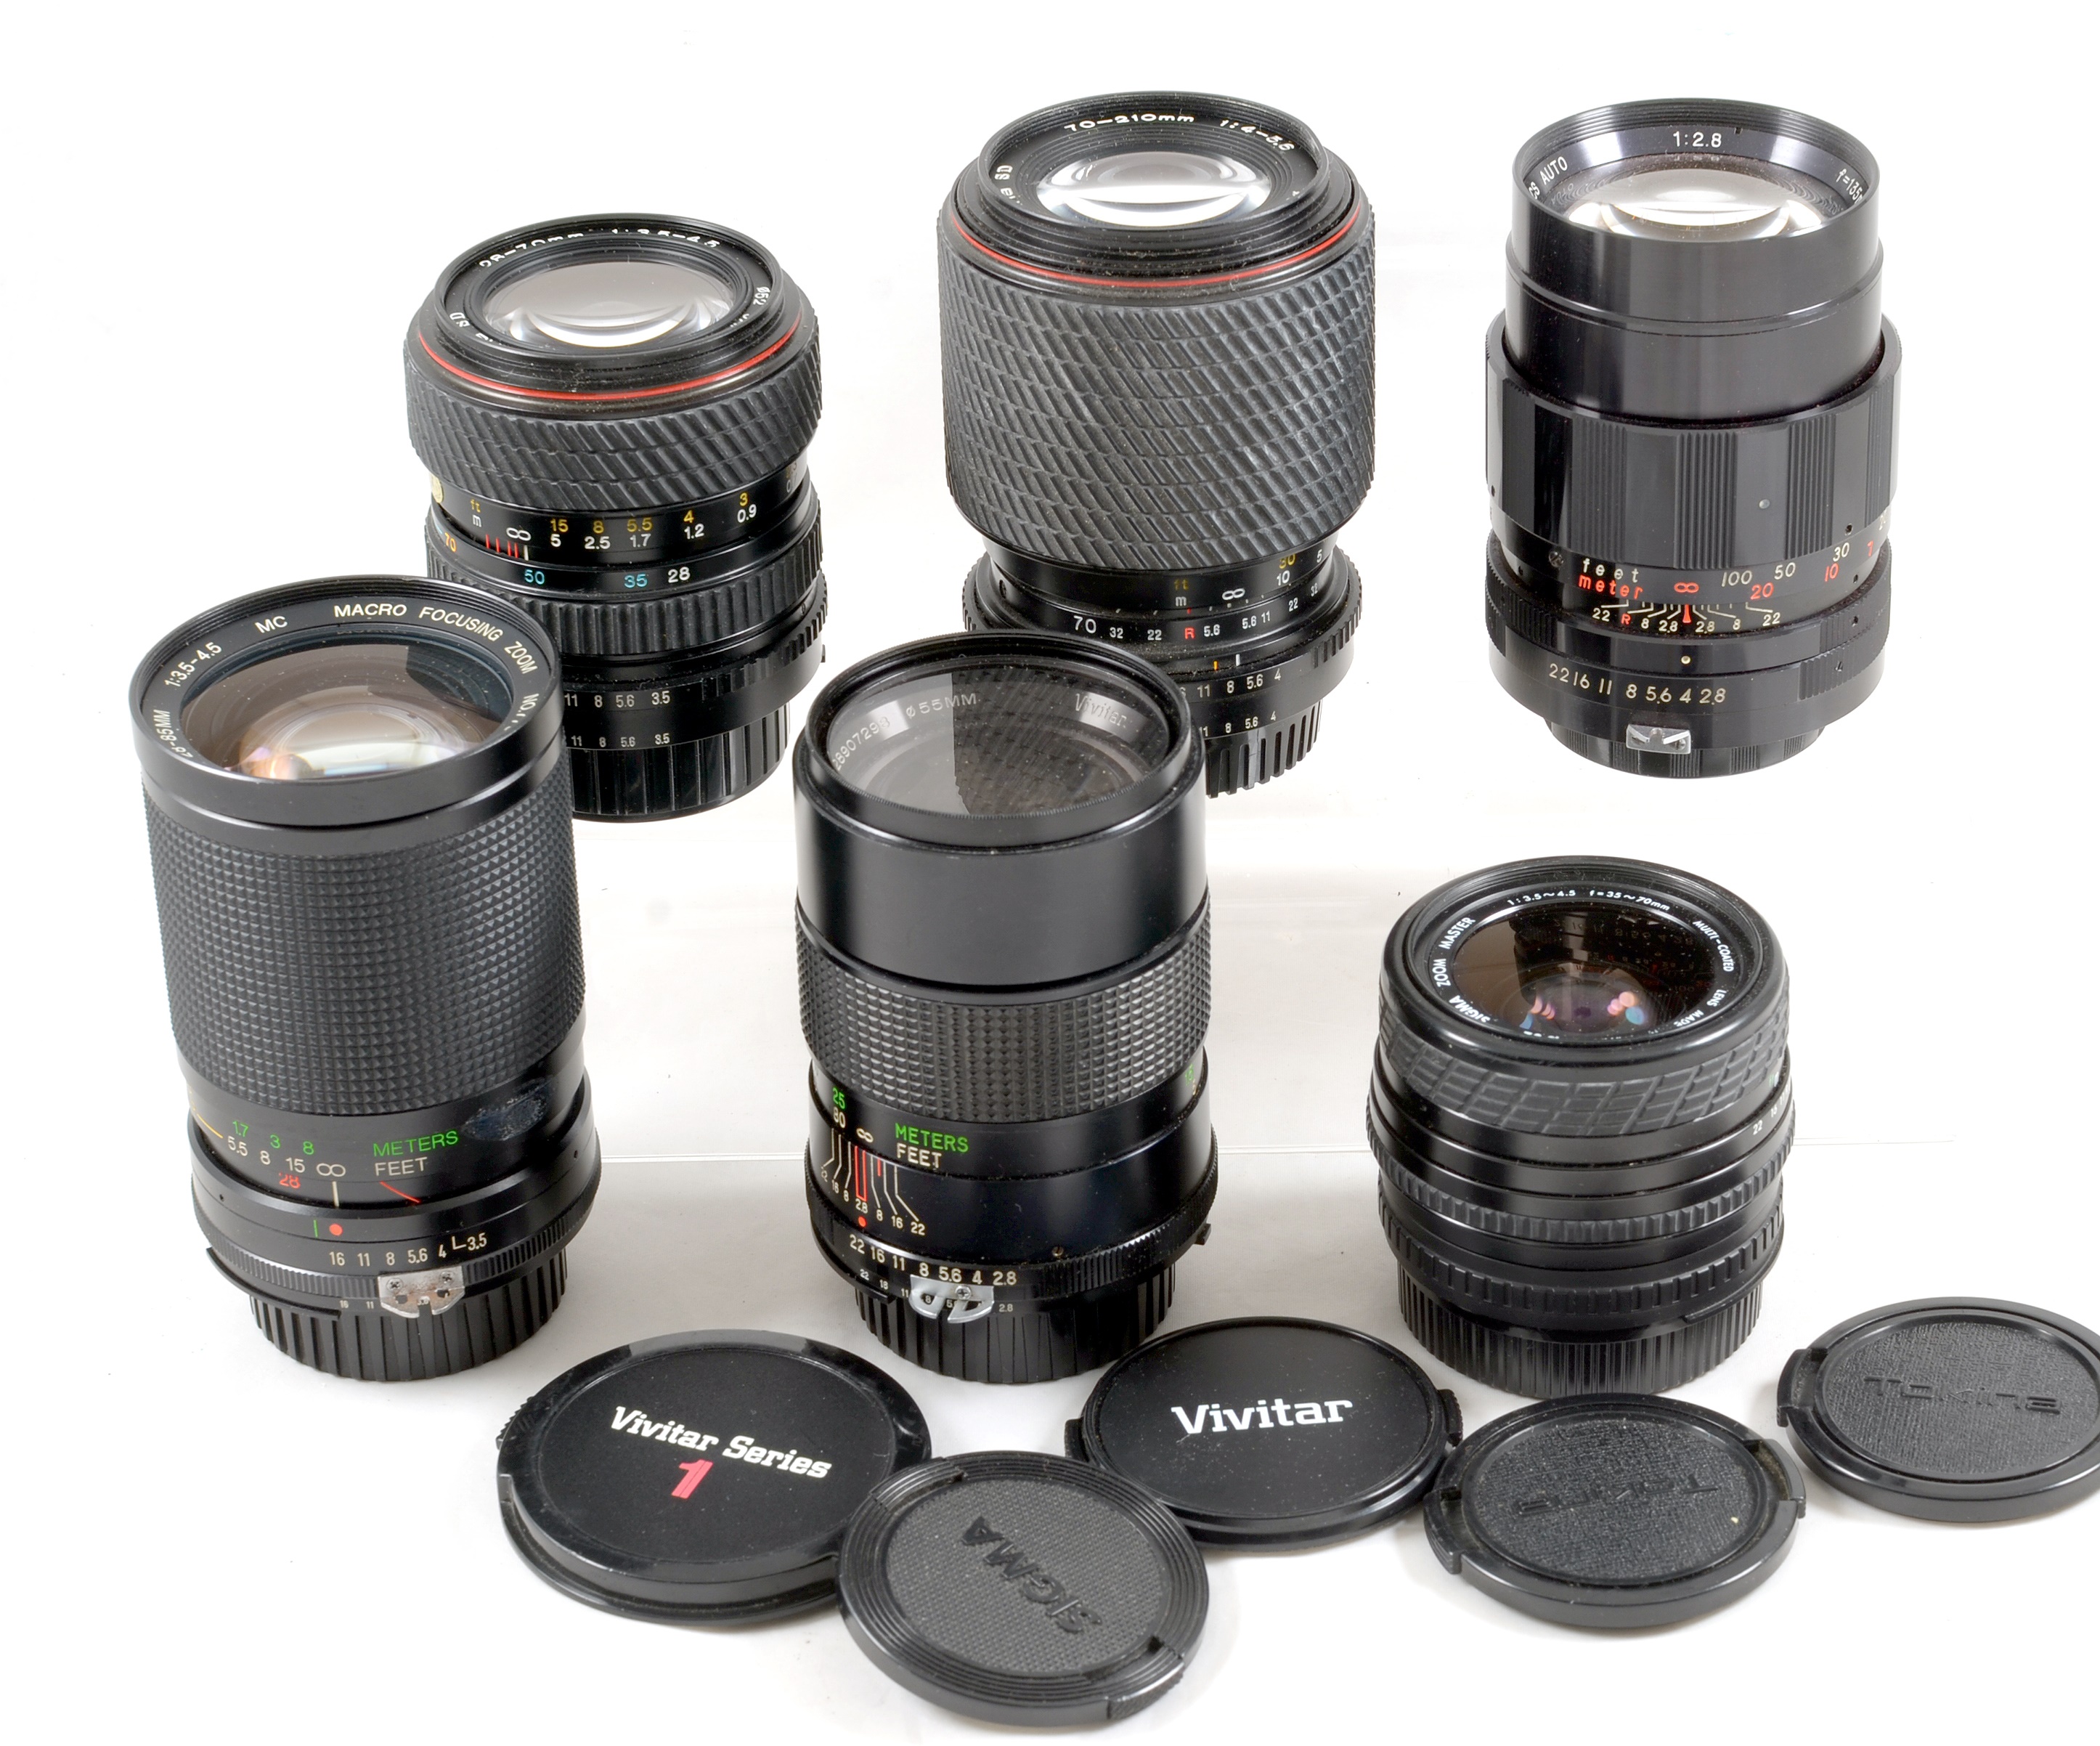 Group of Nikon Fit Manual Focus Lenses.